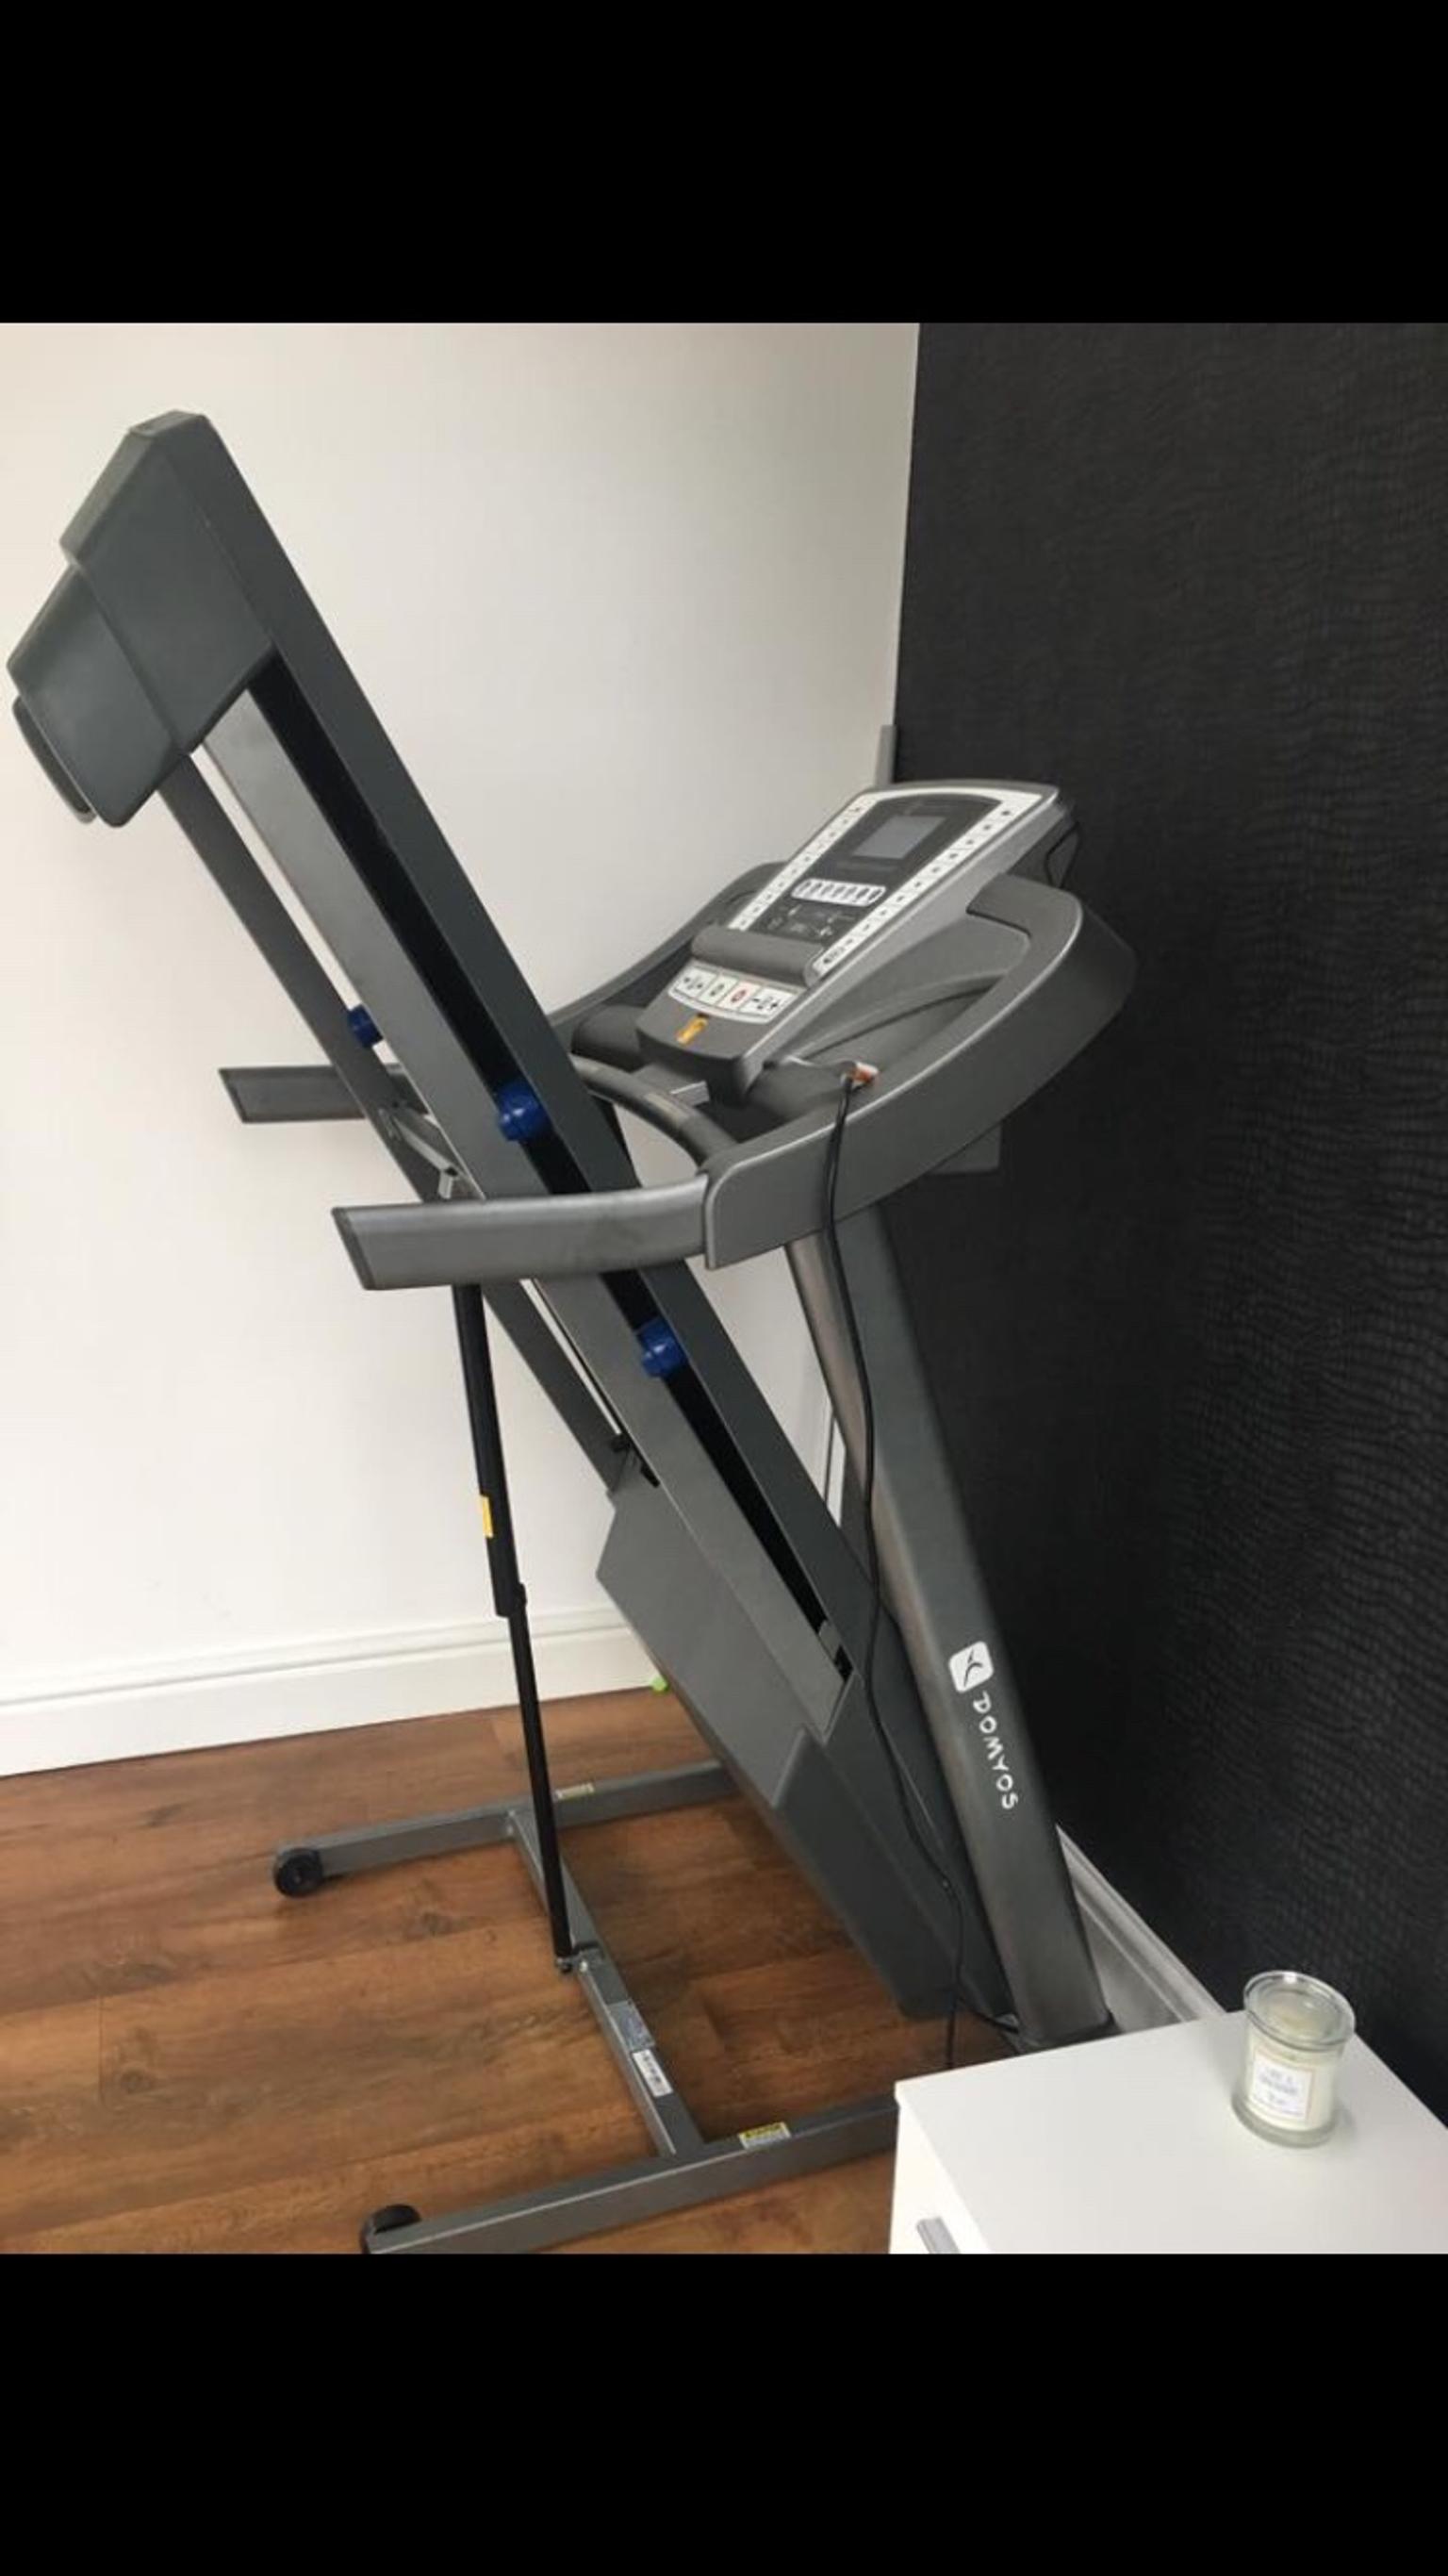 Domyos Tc7 treadmill in Bolton for £200 